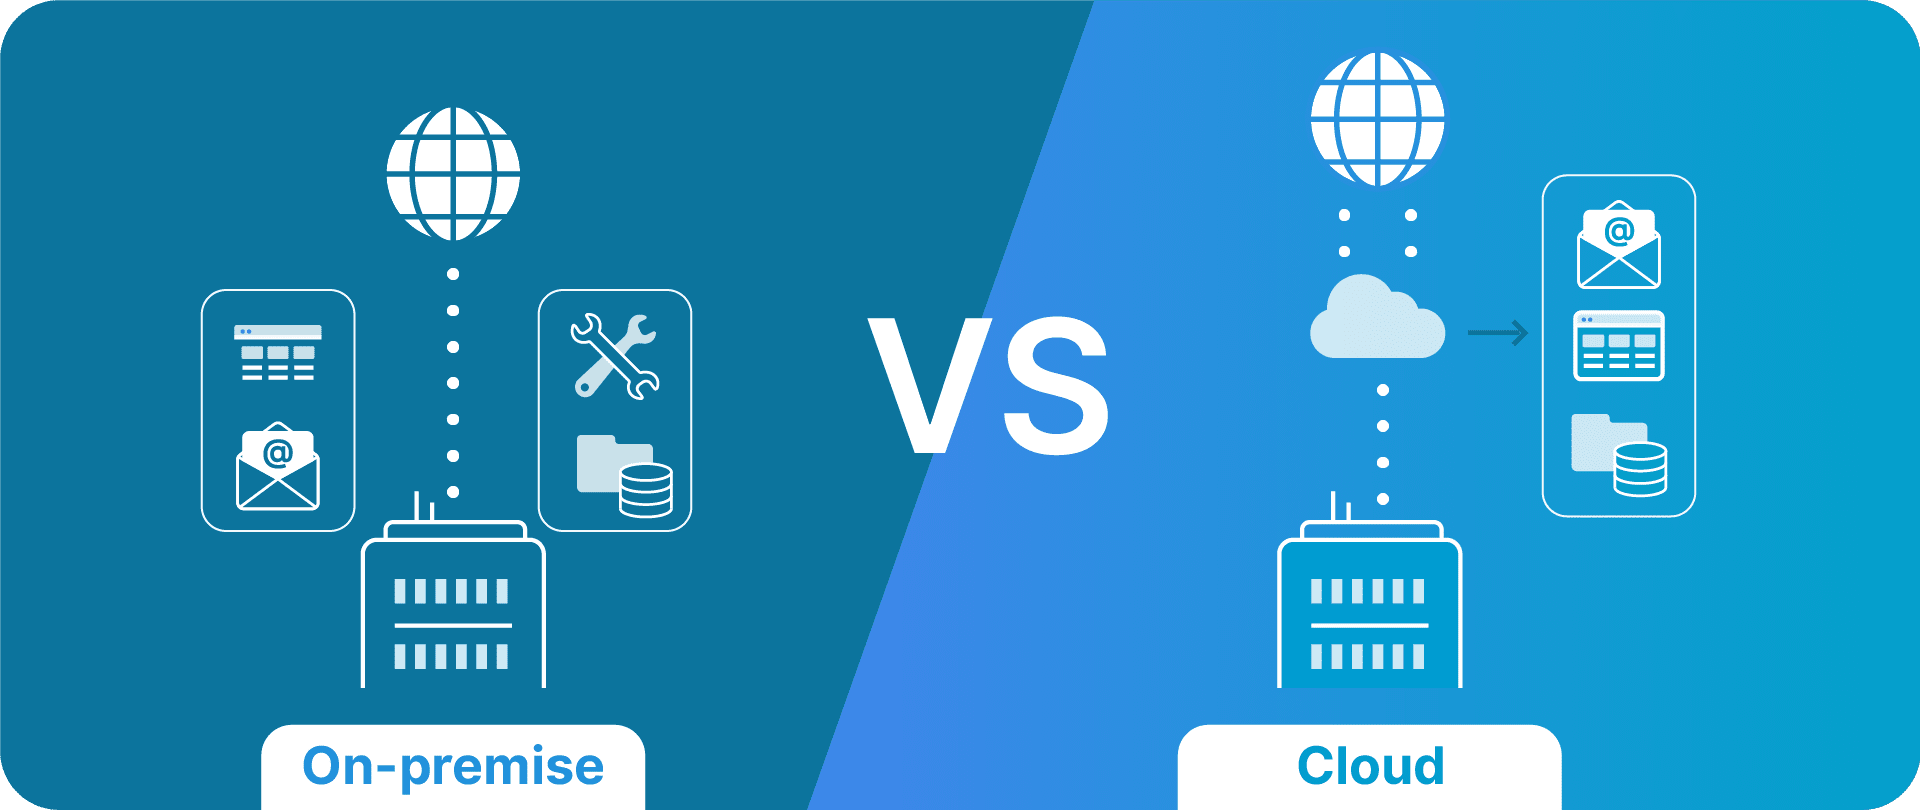 On-premise vs. cloud data centers.